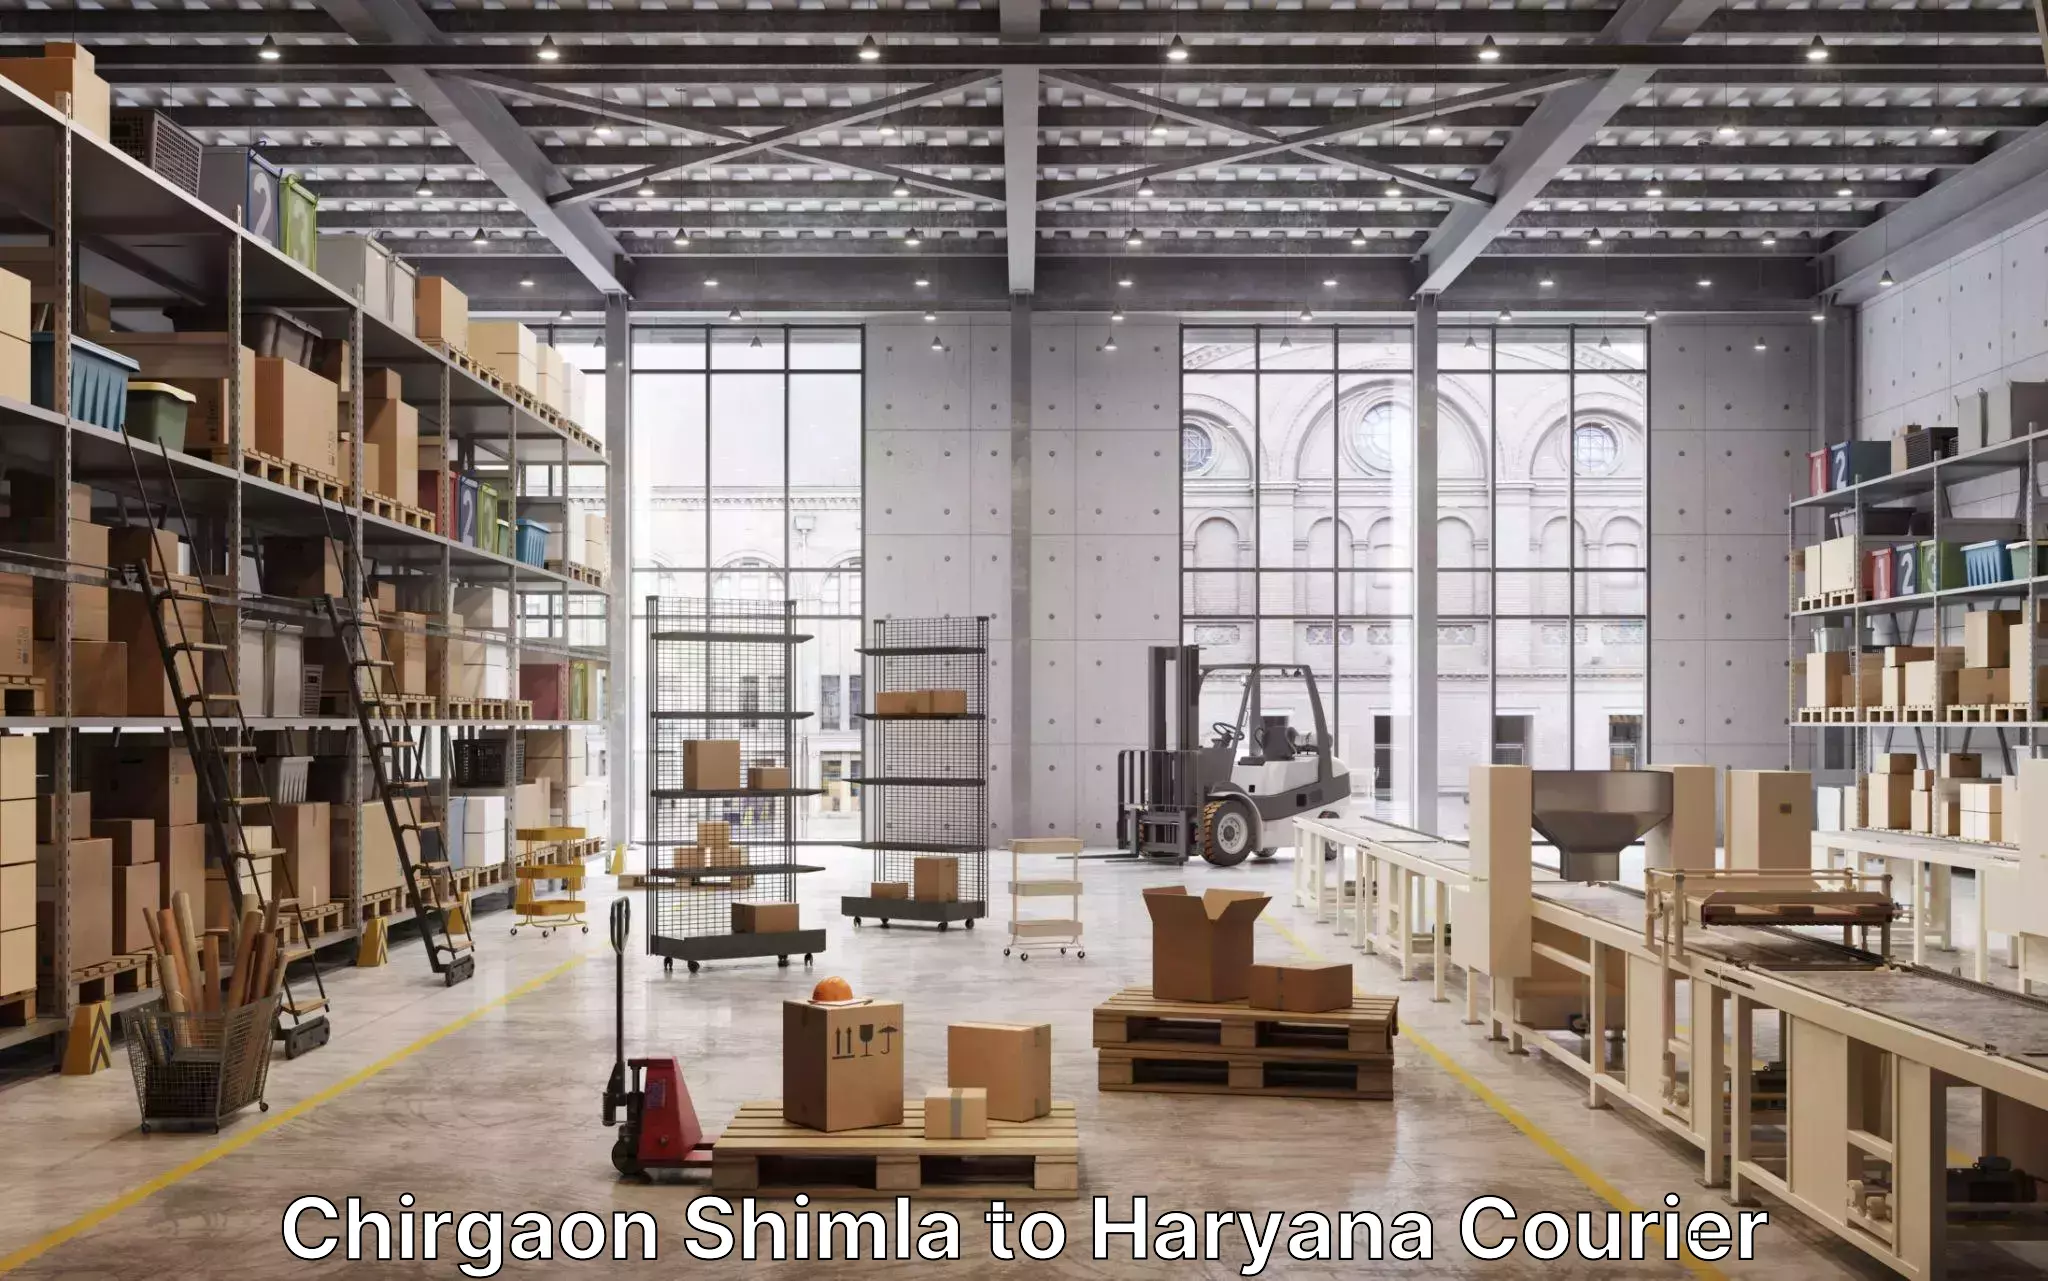 Furniture delivery service Chirgaon Shimla to Yamuna Nagar